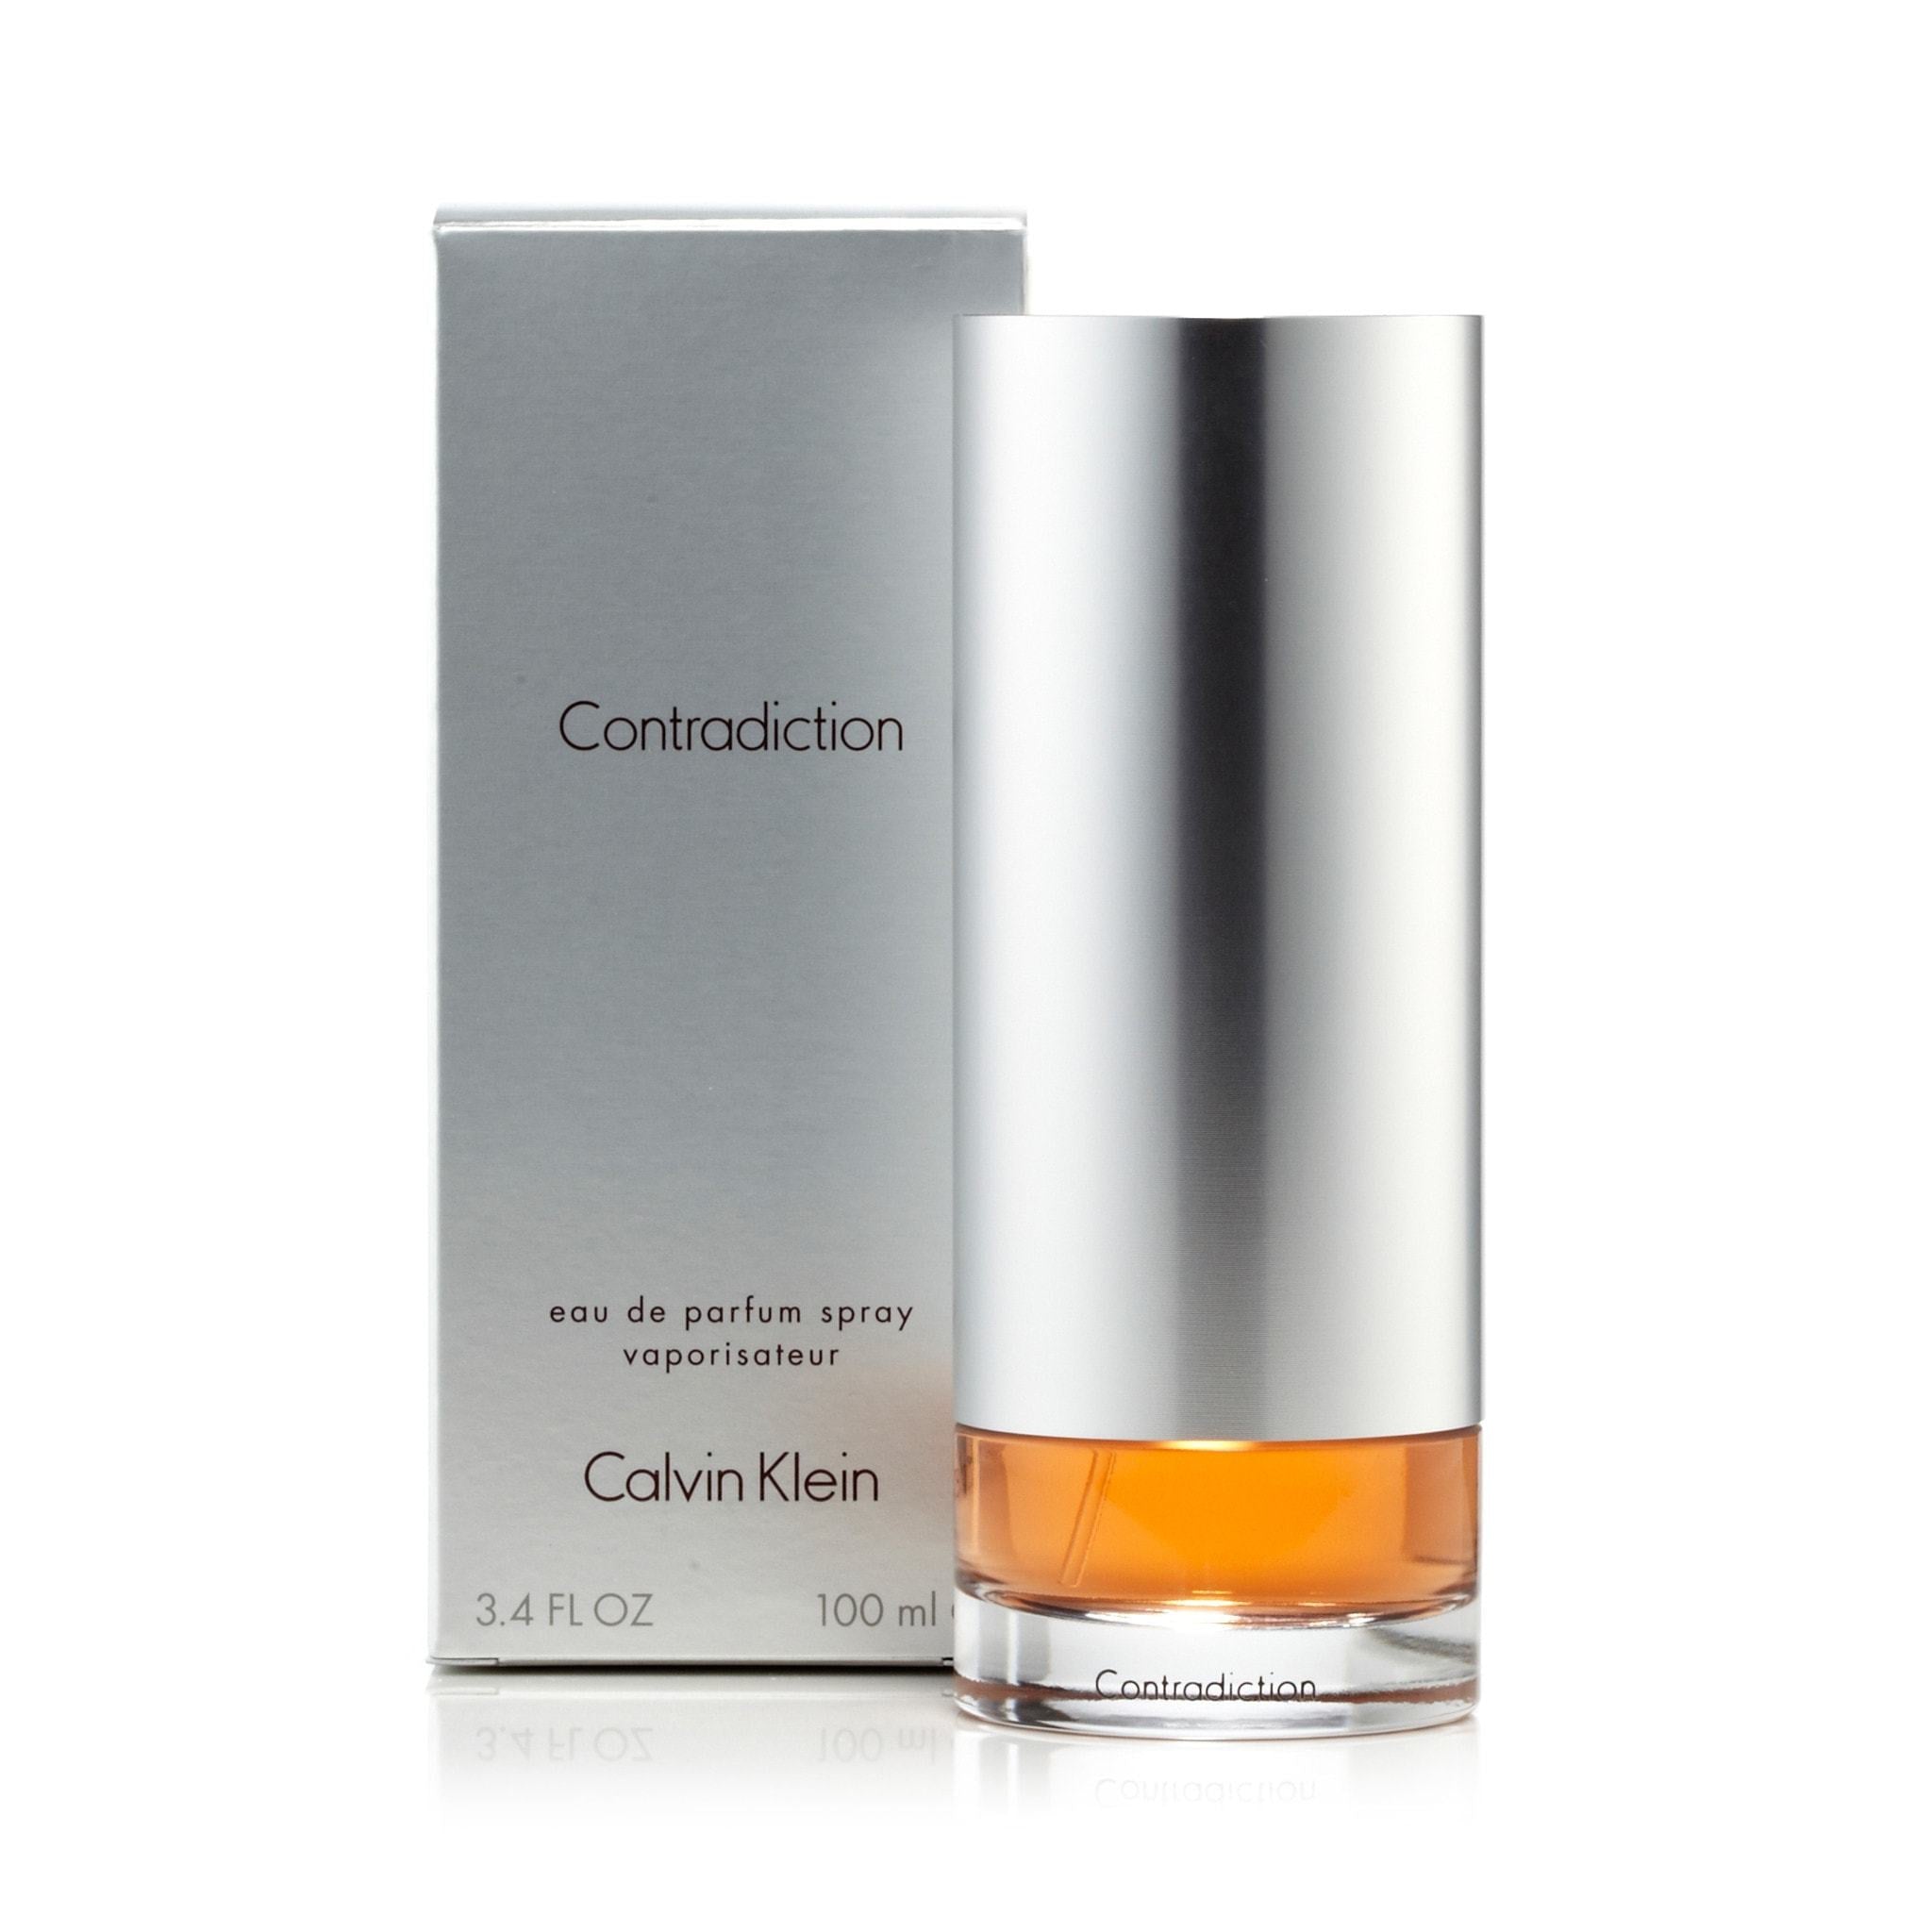 Contradiction Eau de Parfum Spray for Women by Calvin Klein